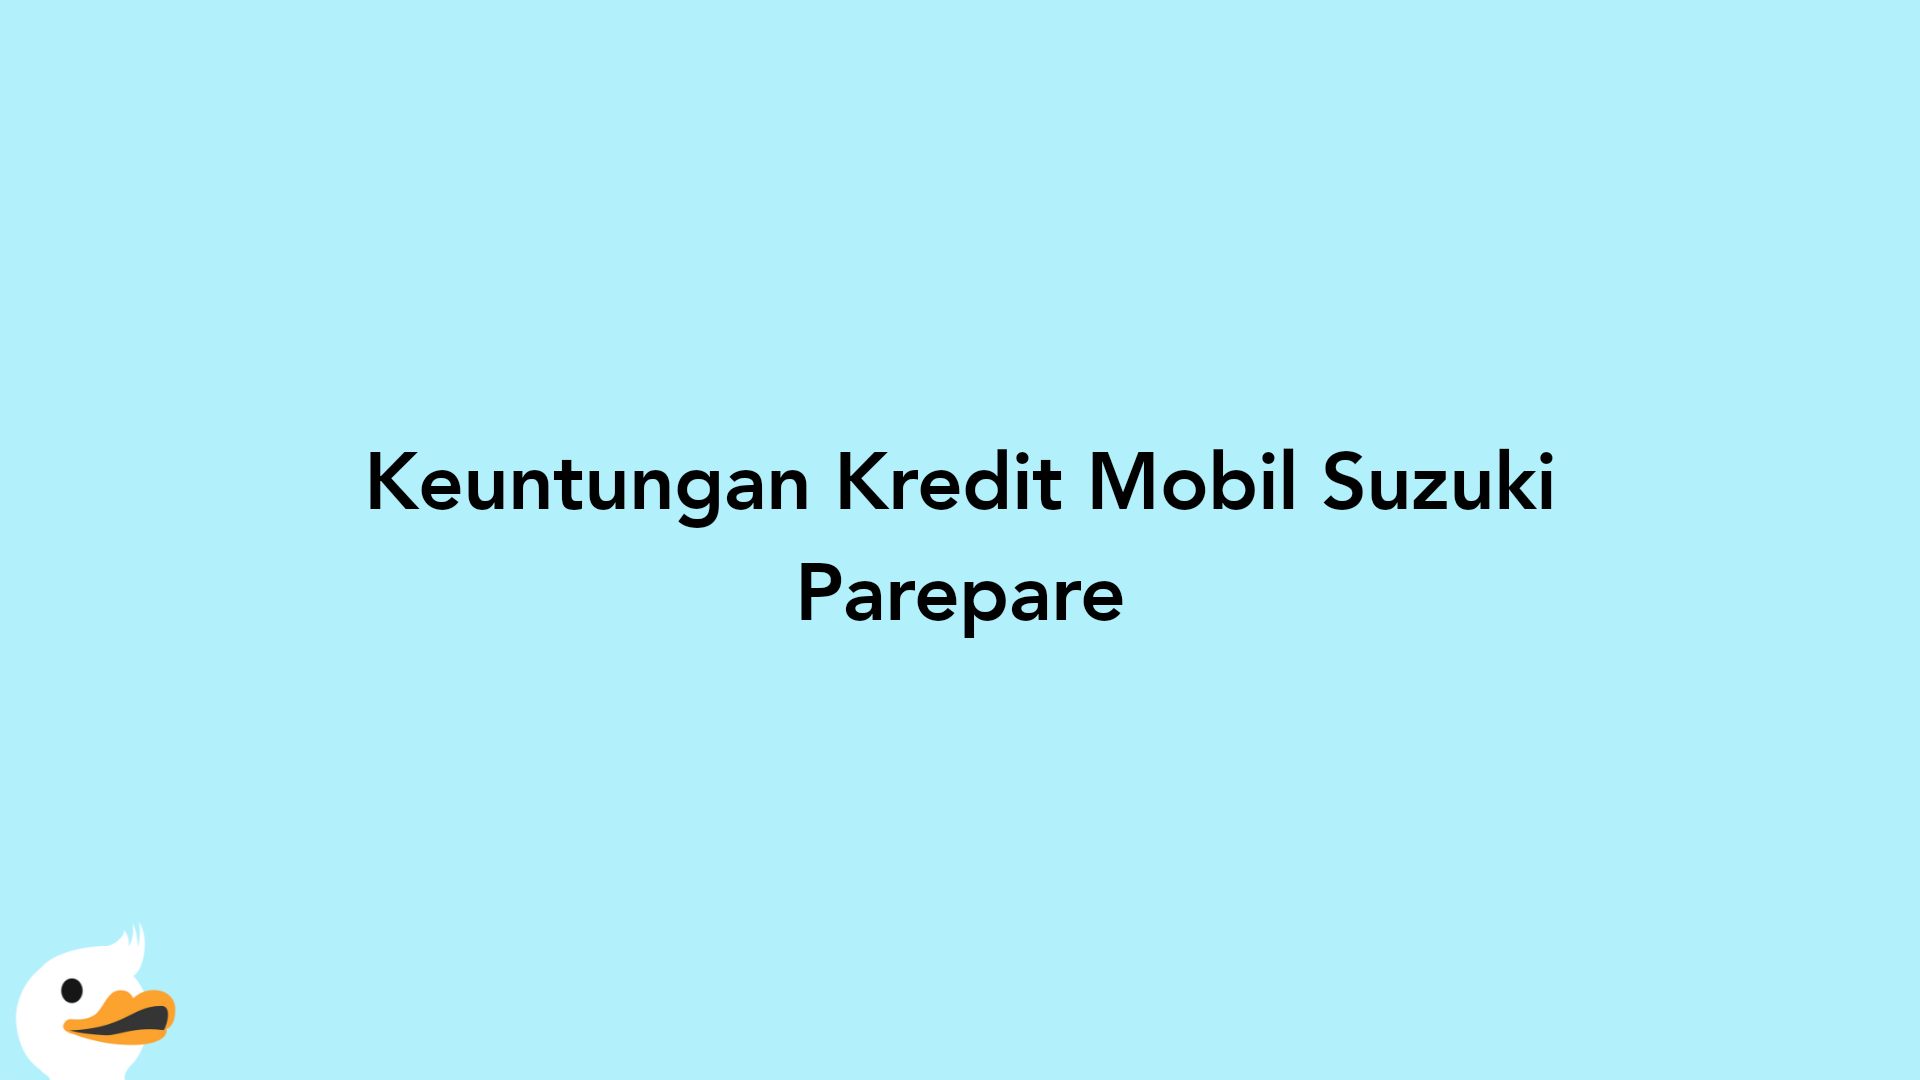 Keuntungan Kredit Mobil Suzuki Parepare